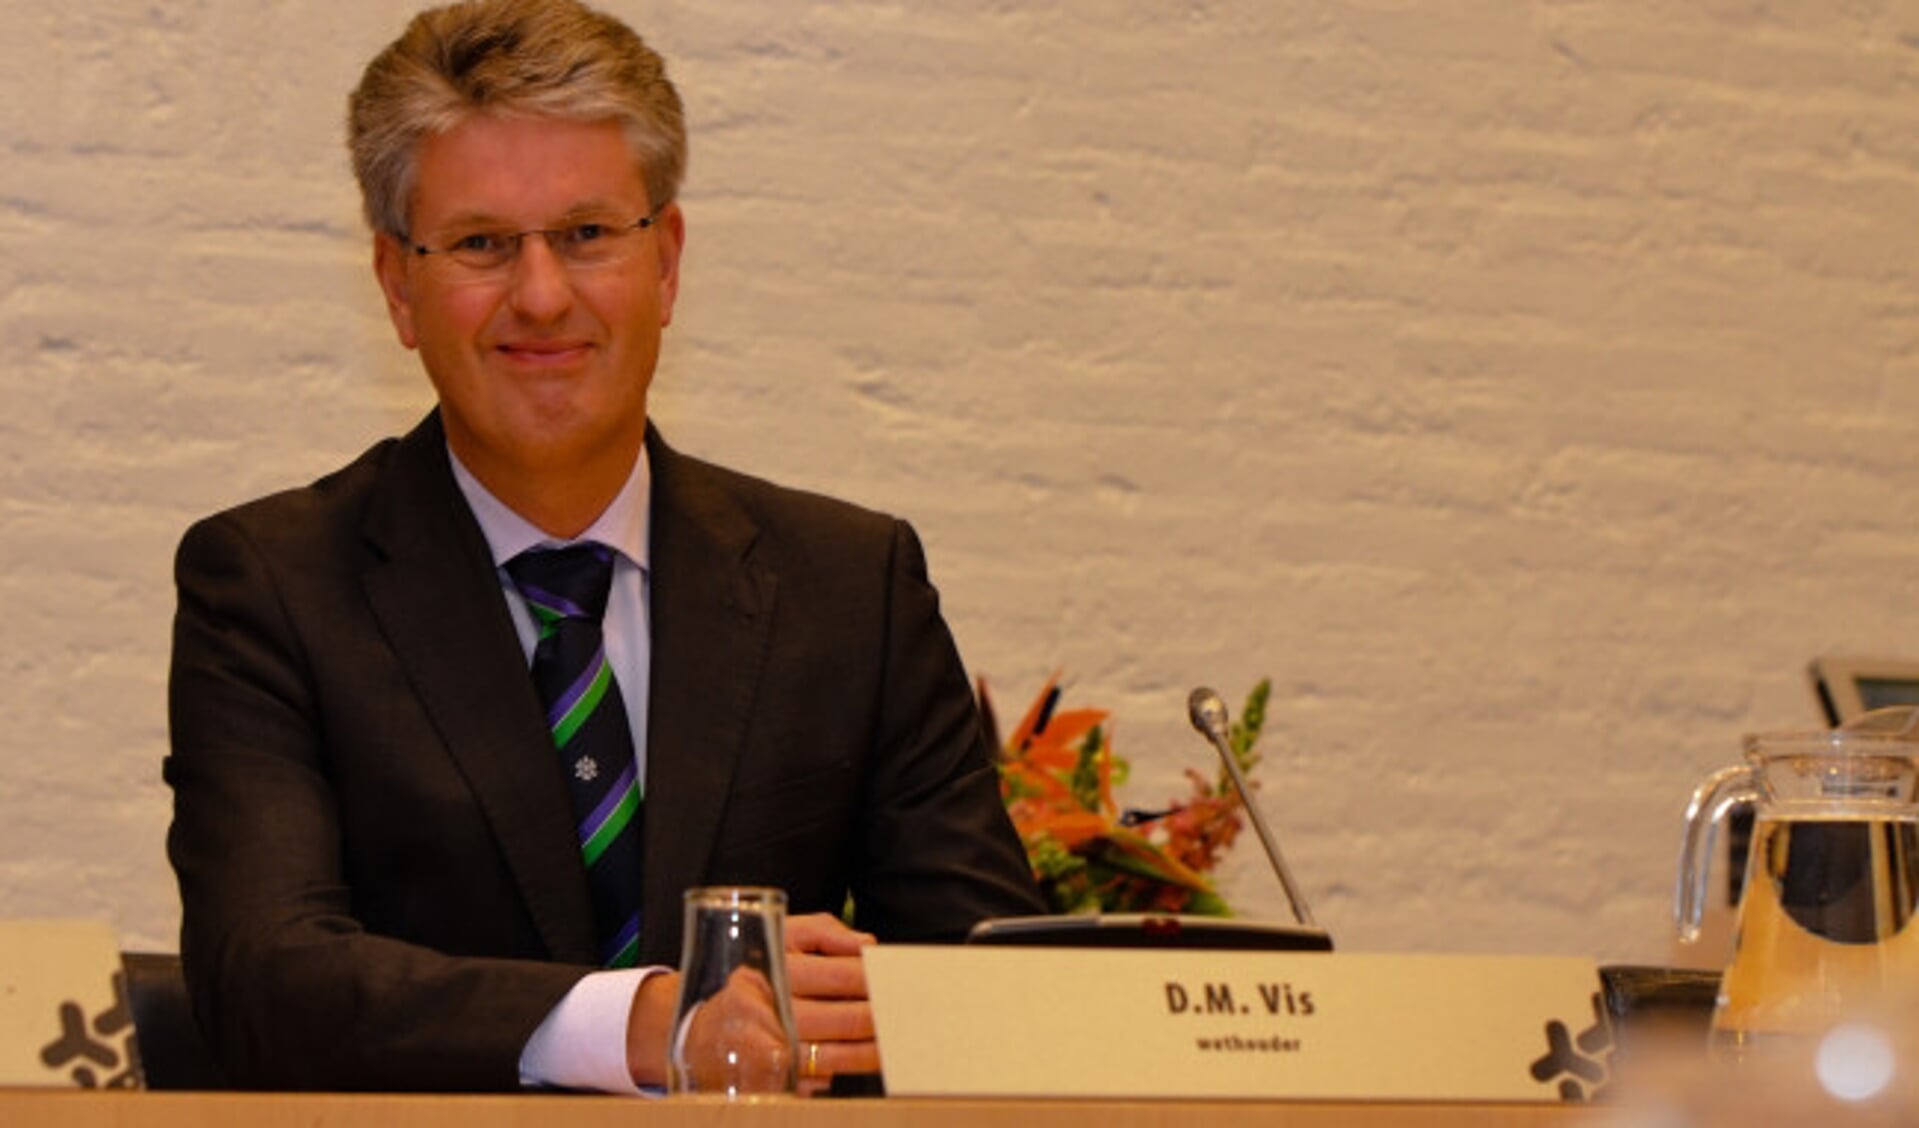  Wethouder Dirk Minne Vis (CDA)